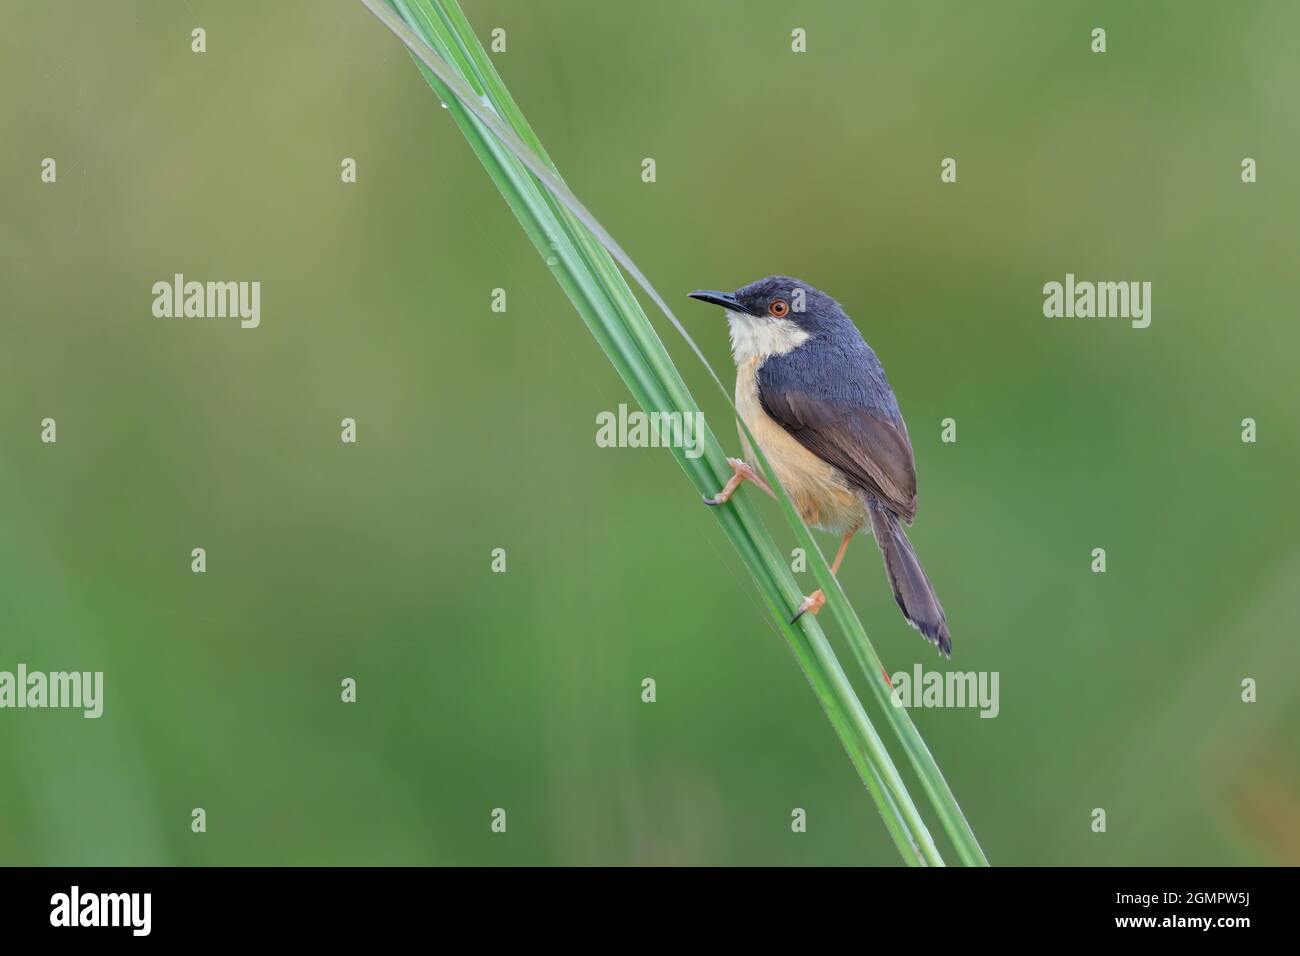 Ashy prinia or ashy wren-warbler (Prinia socialis) blurred background Stock Photo